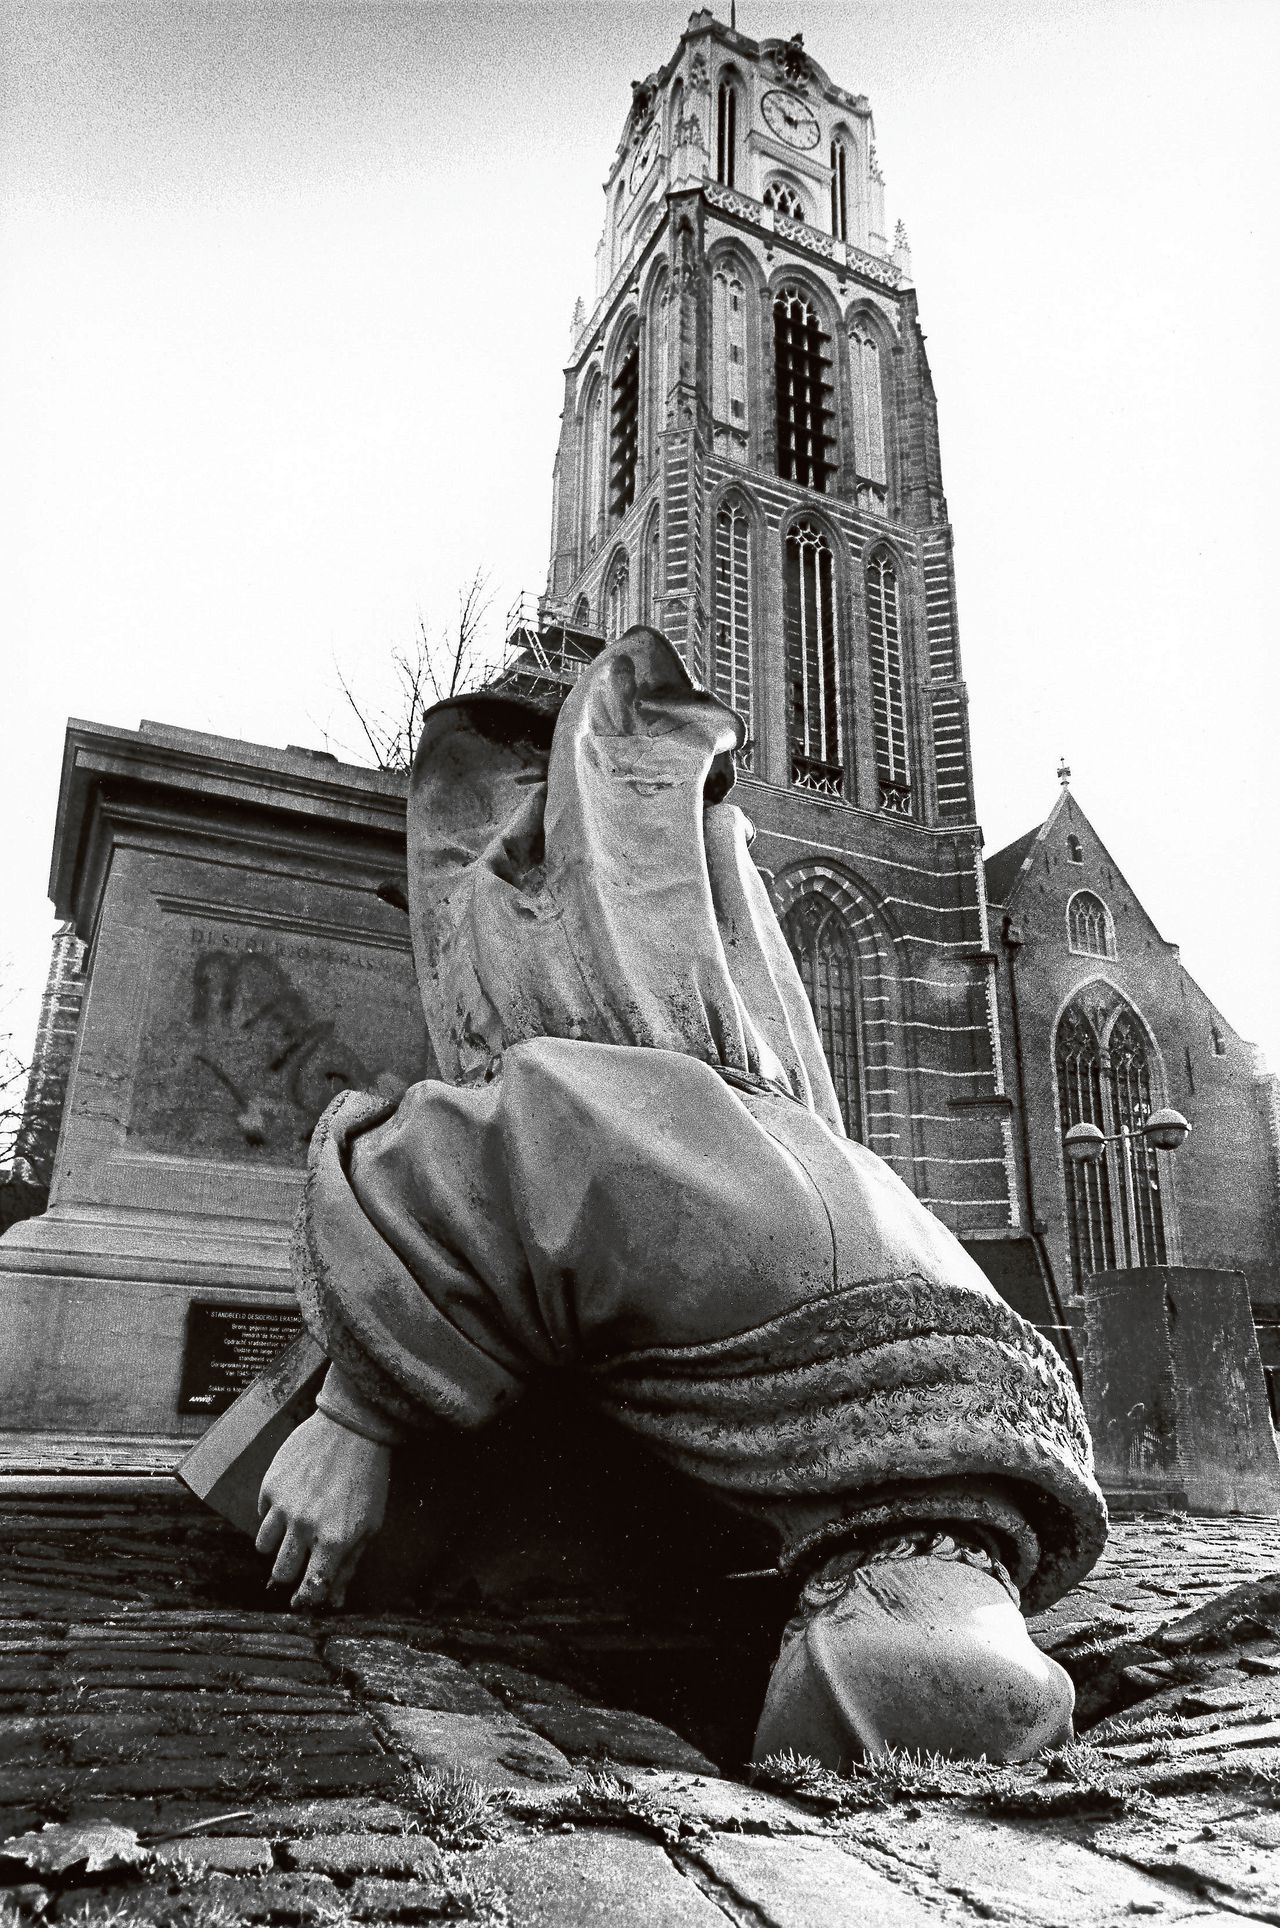 In 1996 werd het bronzen beeld van Desiderius Erasmus door onbekenden omvergetrokken. Het beeld lag voorover met zijn neus op de grond op de Laurensplaats in Rotterdam.